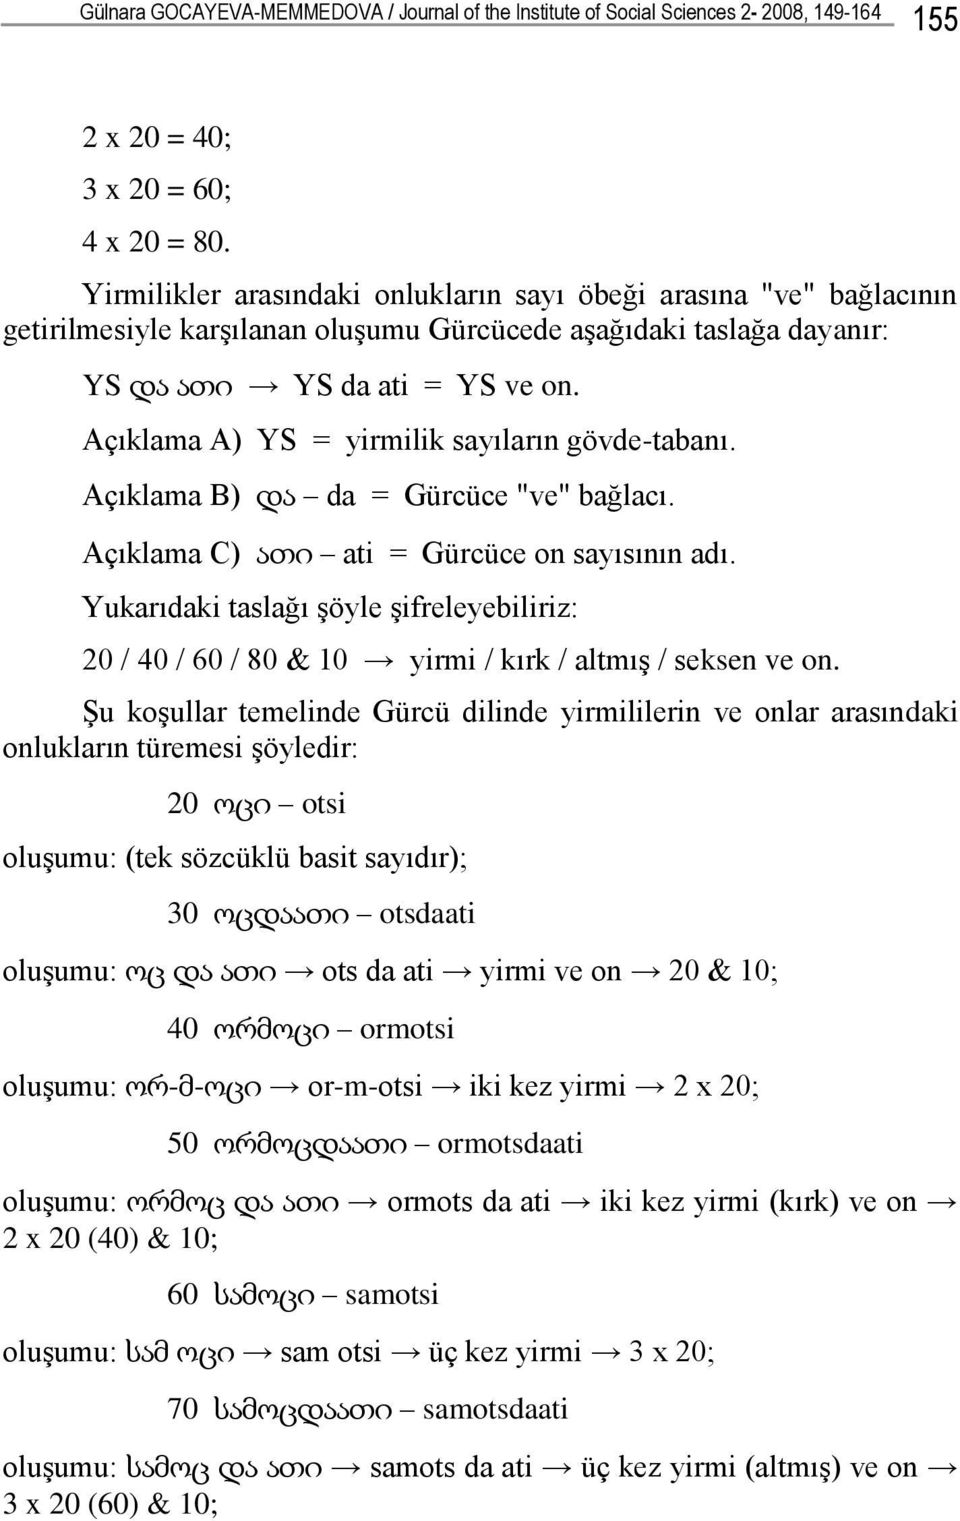 Açıklama A) YS = yirmilik sayıların gövde-tabanı. Açıklama B) და da = Gürcüce "ve" bağlacı. Açıklama C) ათი ati = Gürcüce on sayısının adı.